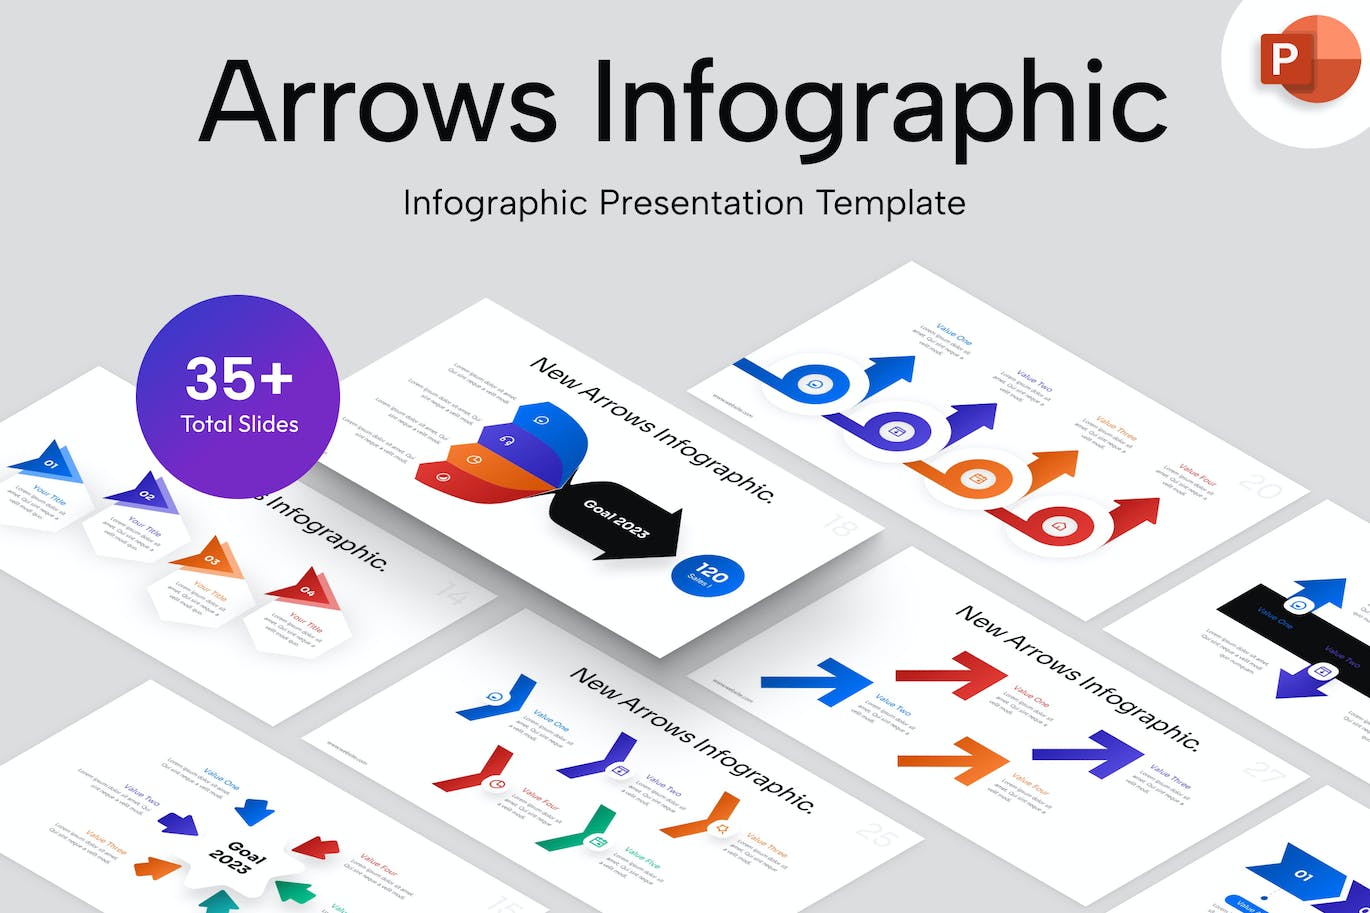 箭头信息图表PowerPoint演示文稿模板 Arrows Infographic PowerPoint Template 幻灯图表 第1张